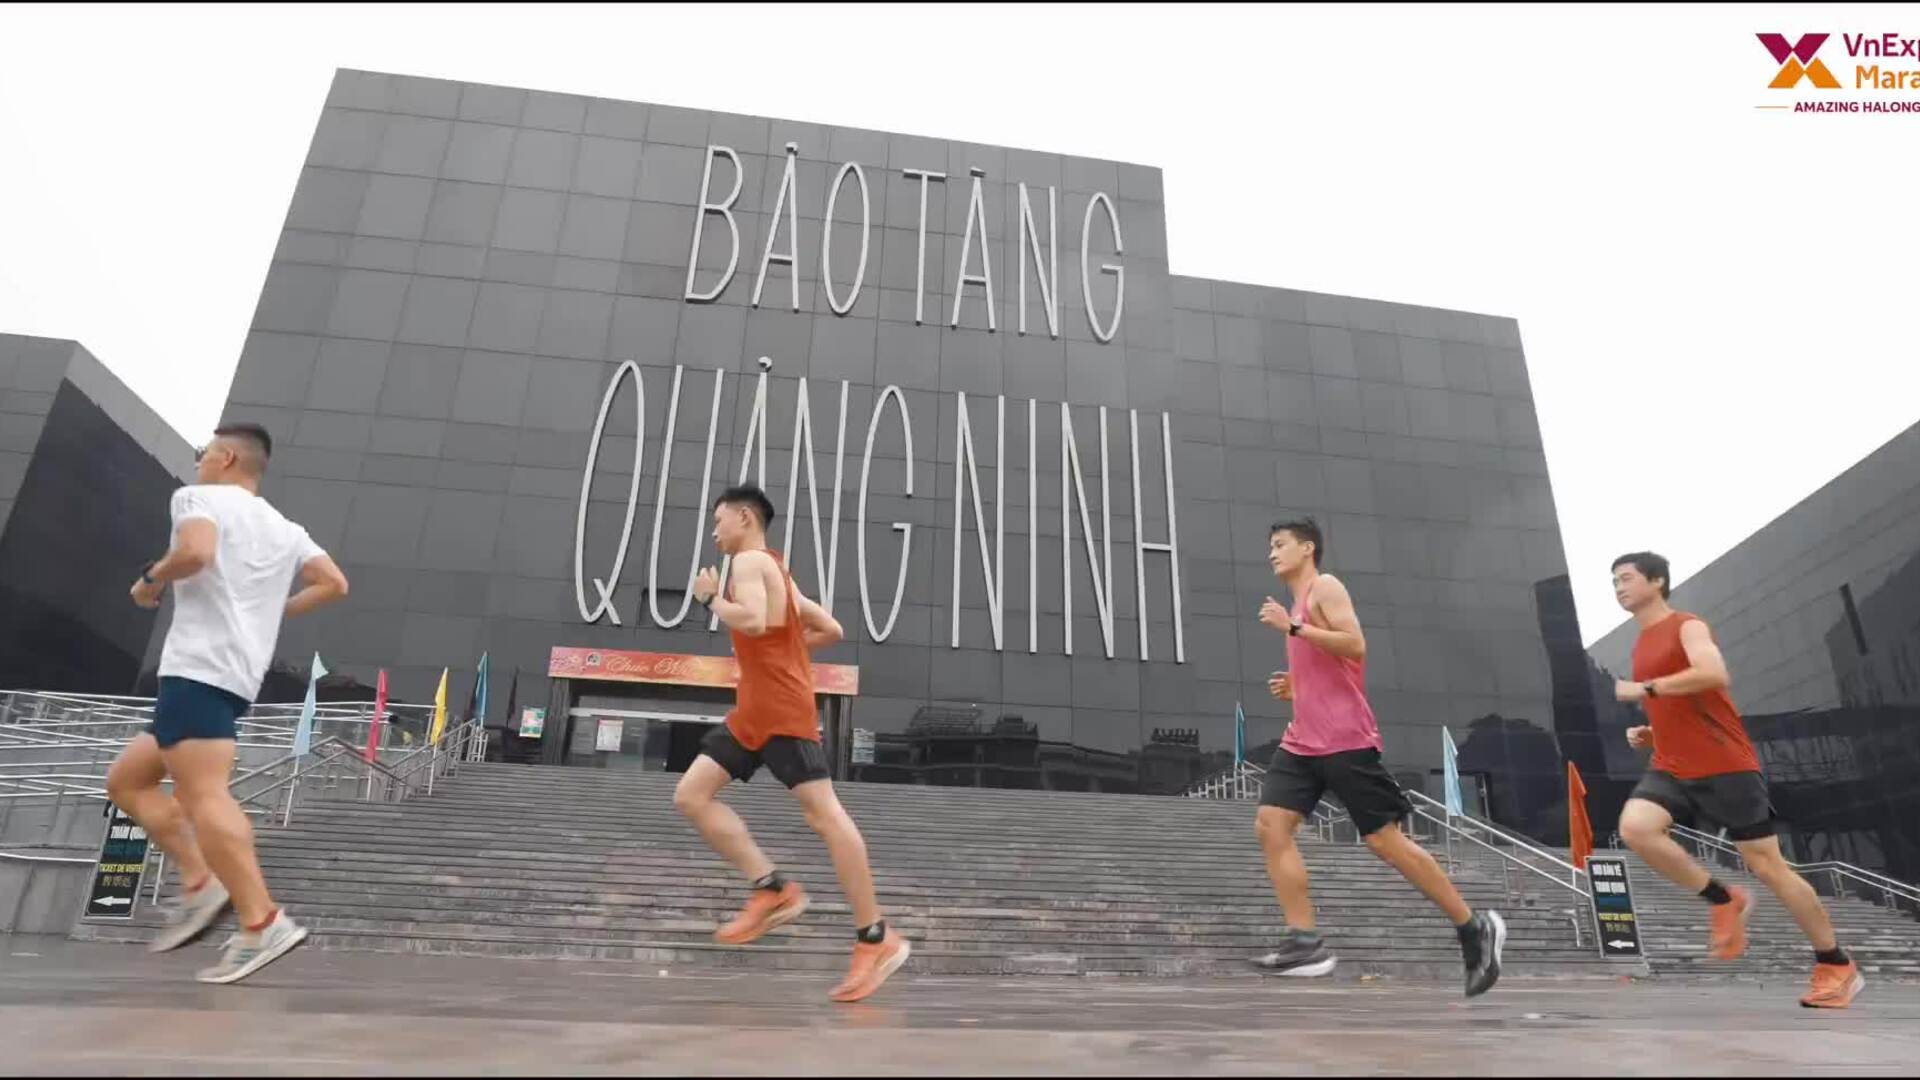 Cảnh sắc phố biển Hạ Long trong trailer VnExpress Marathon Du lịch  